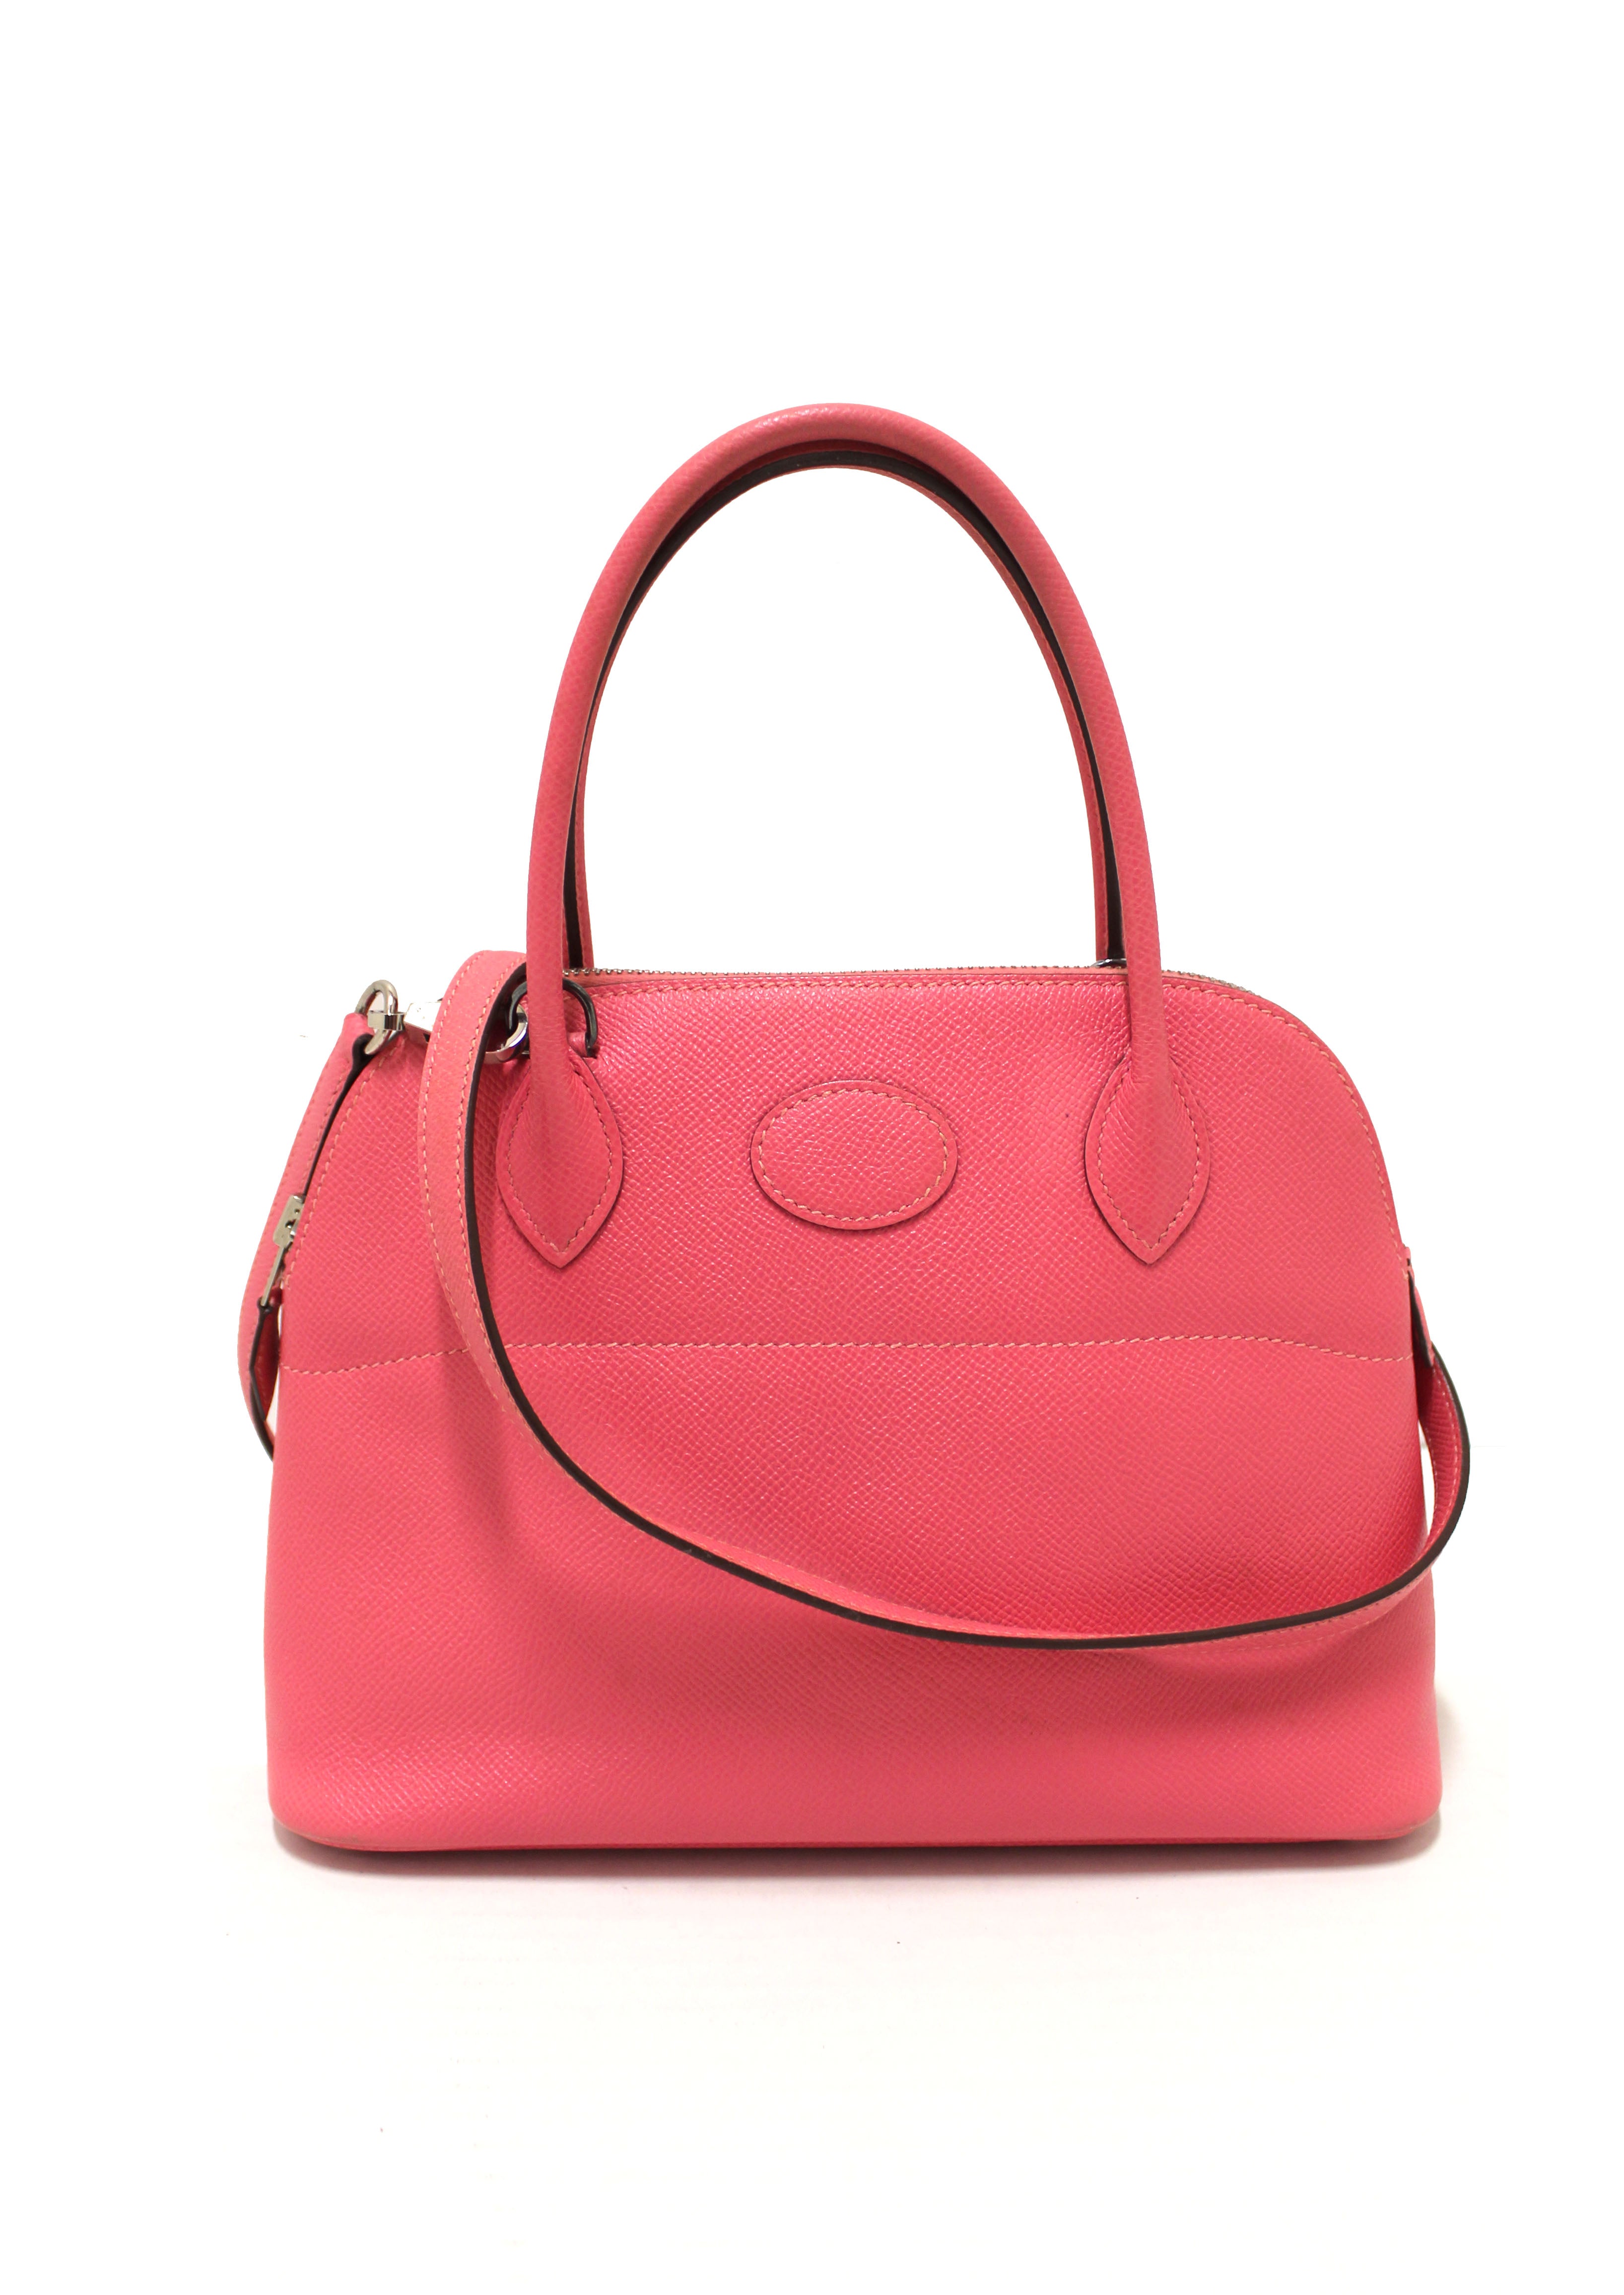 Hermes Bolide 27 Epsom Leather Handbag/Shoulder Bag